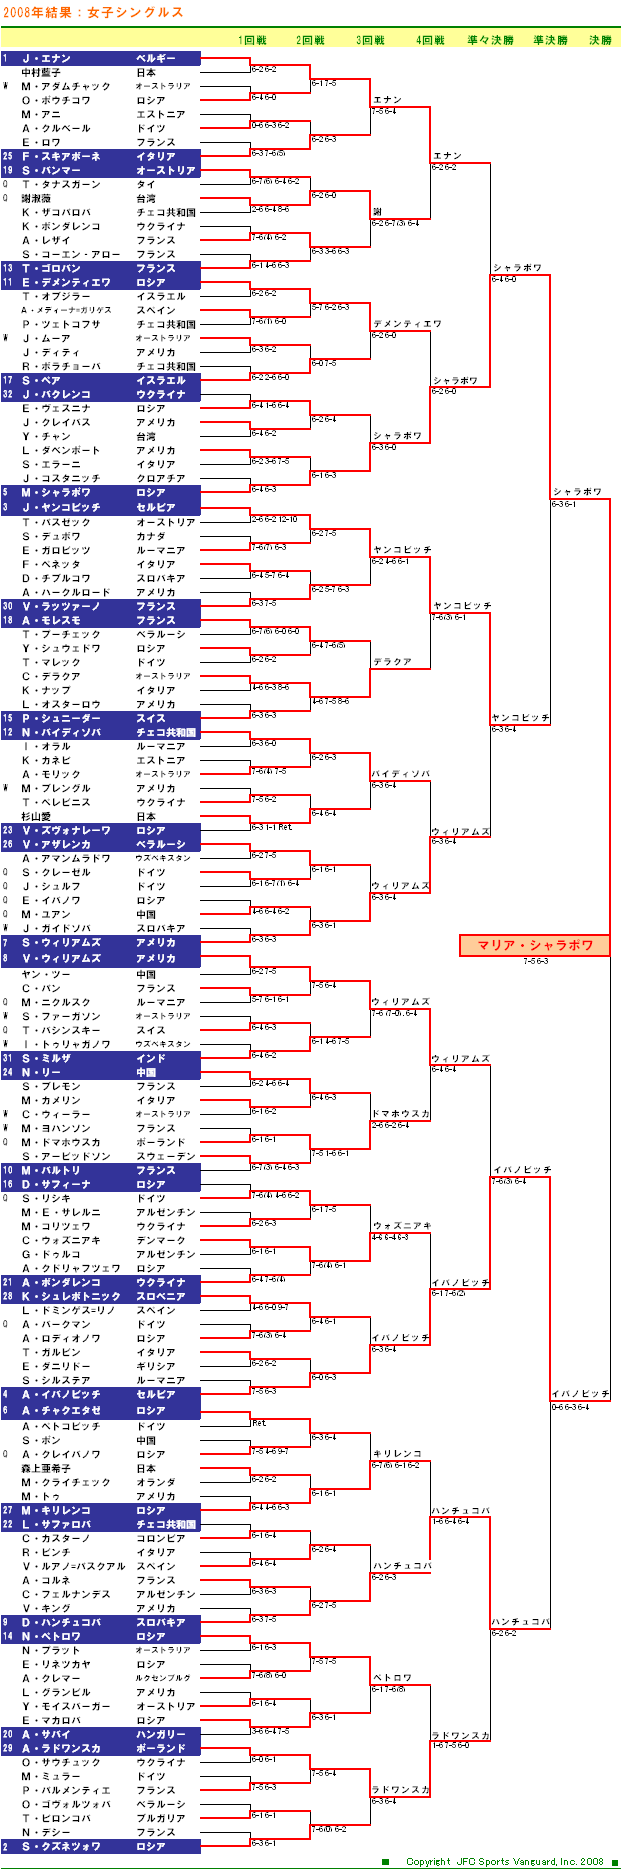 全豪オープンテニス2008　女子シングルスドロー表